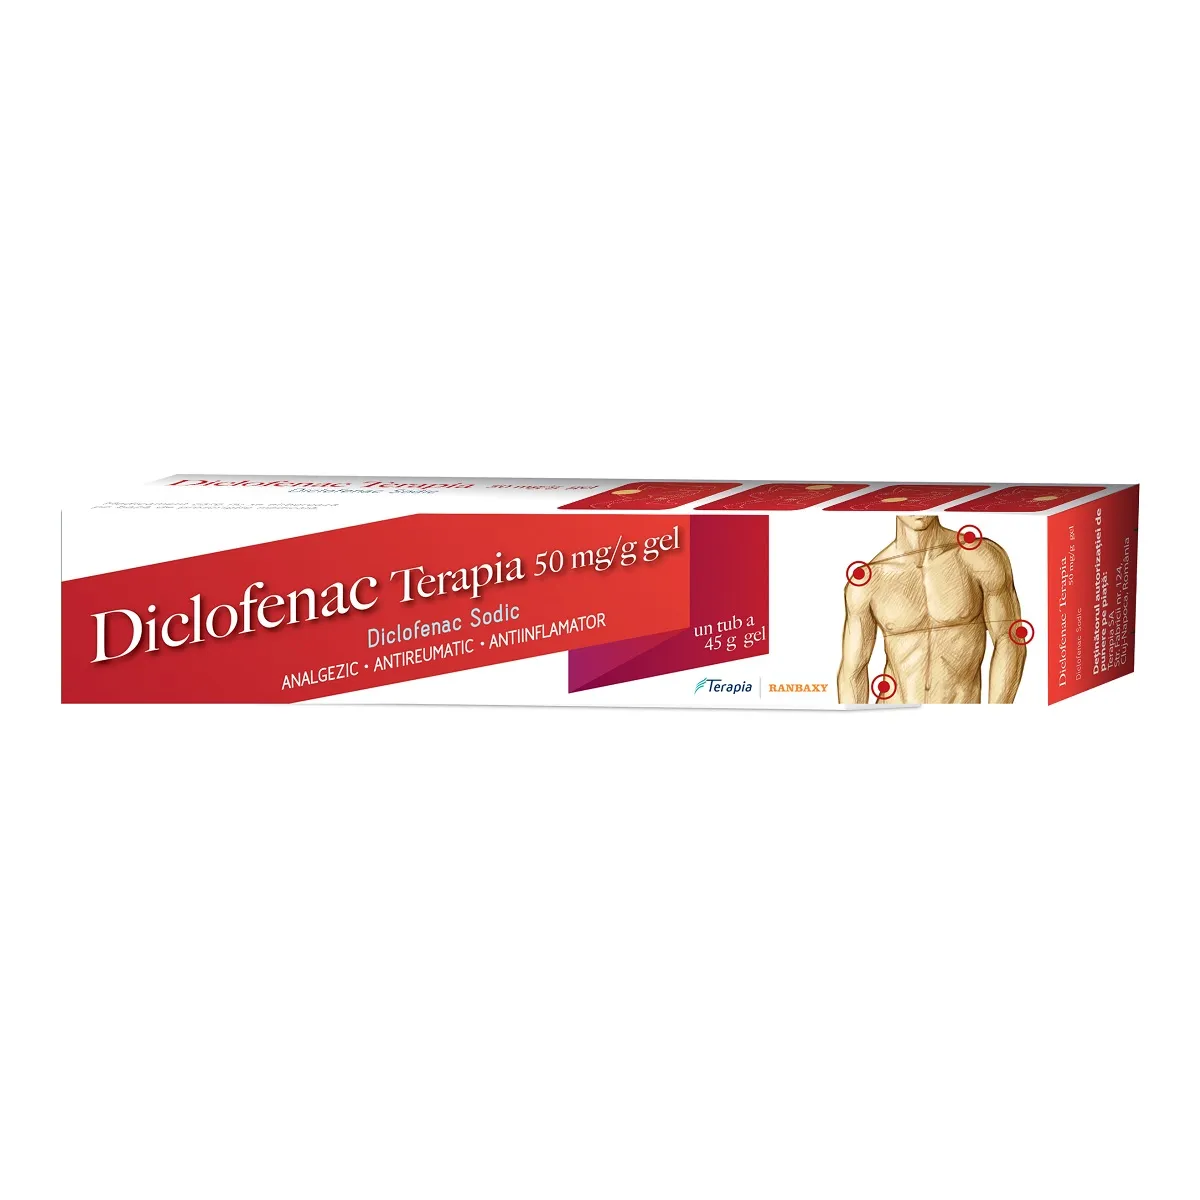 DICLOFENAC TERAPIA 50 mg/g x 1